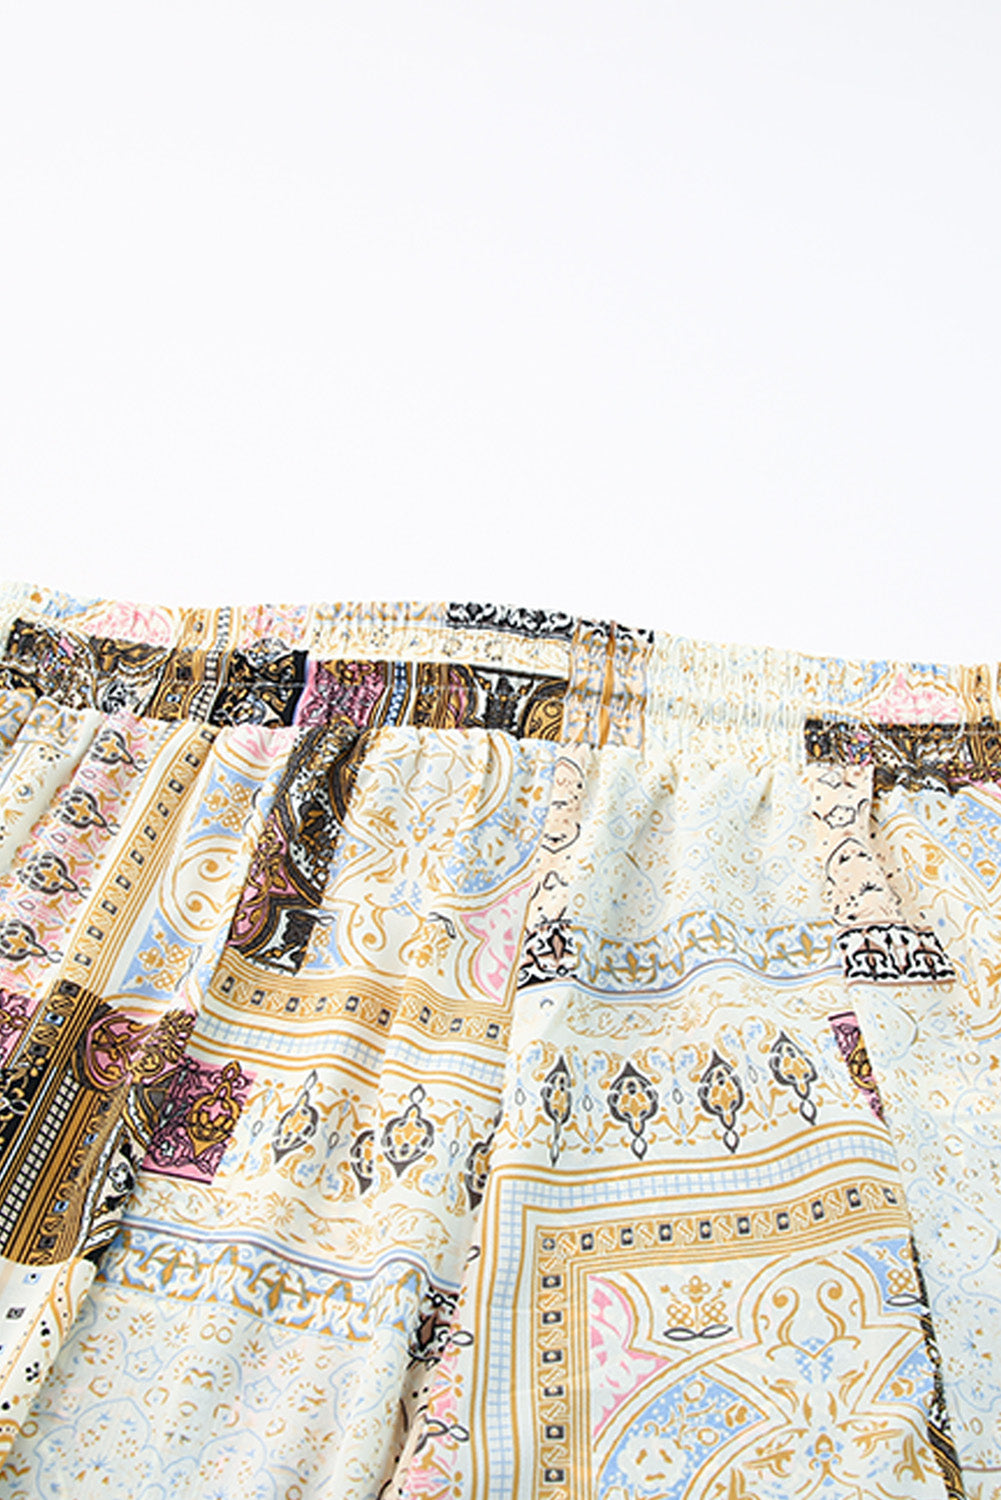 Rumene široke hlače z vrvicami v stilu boho patchwork